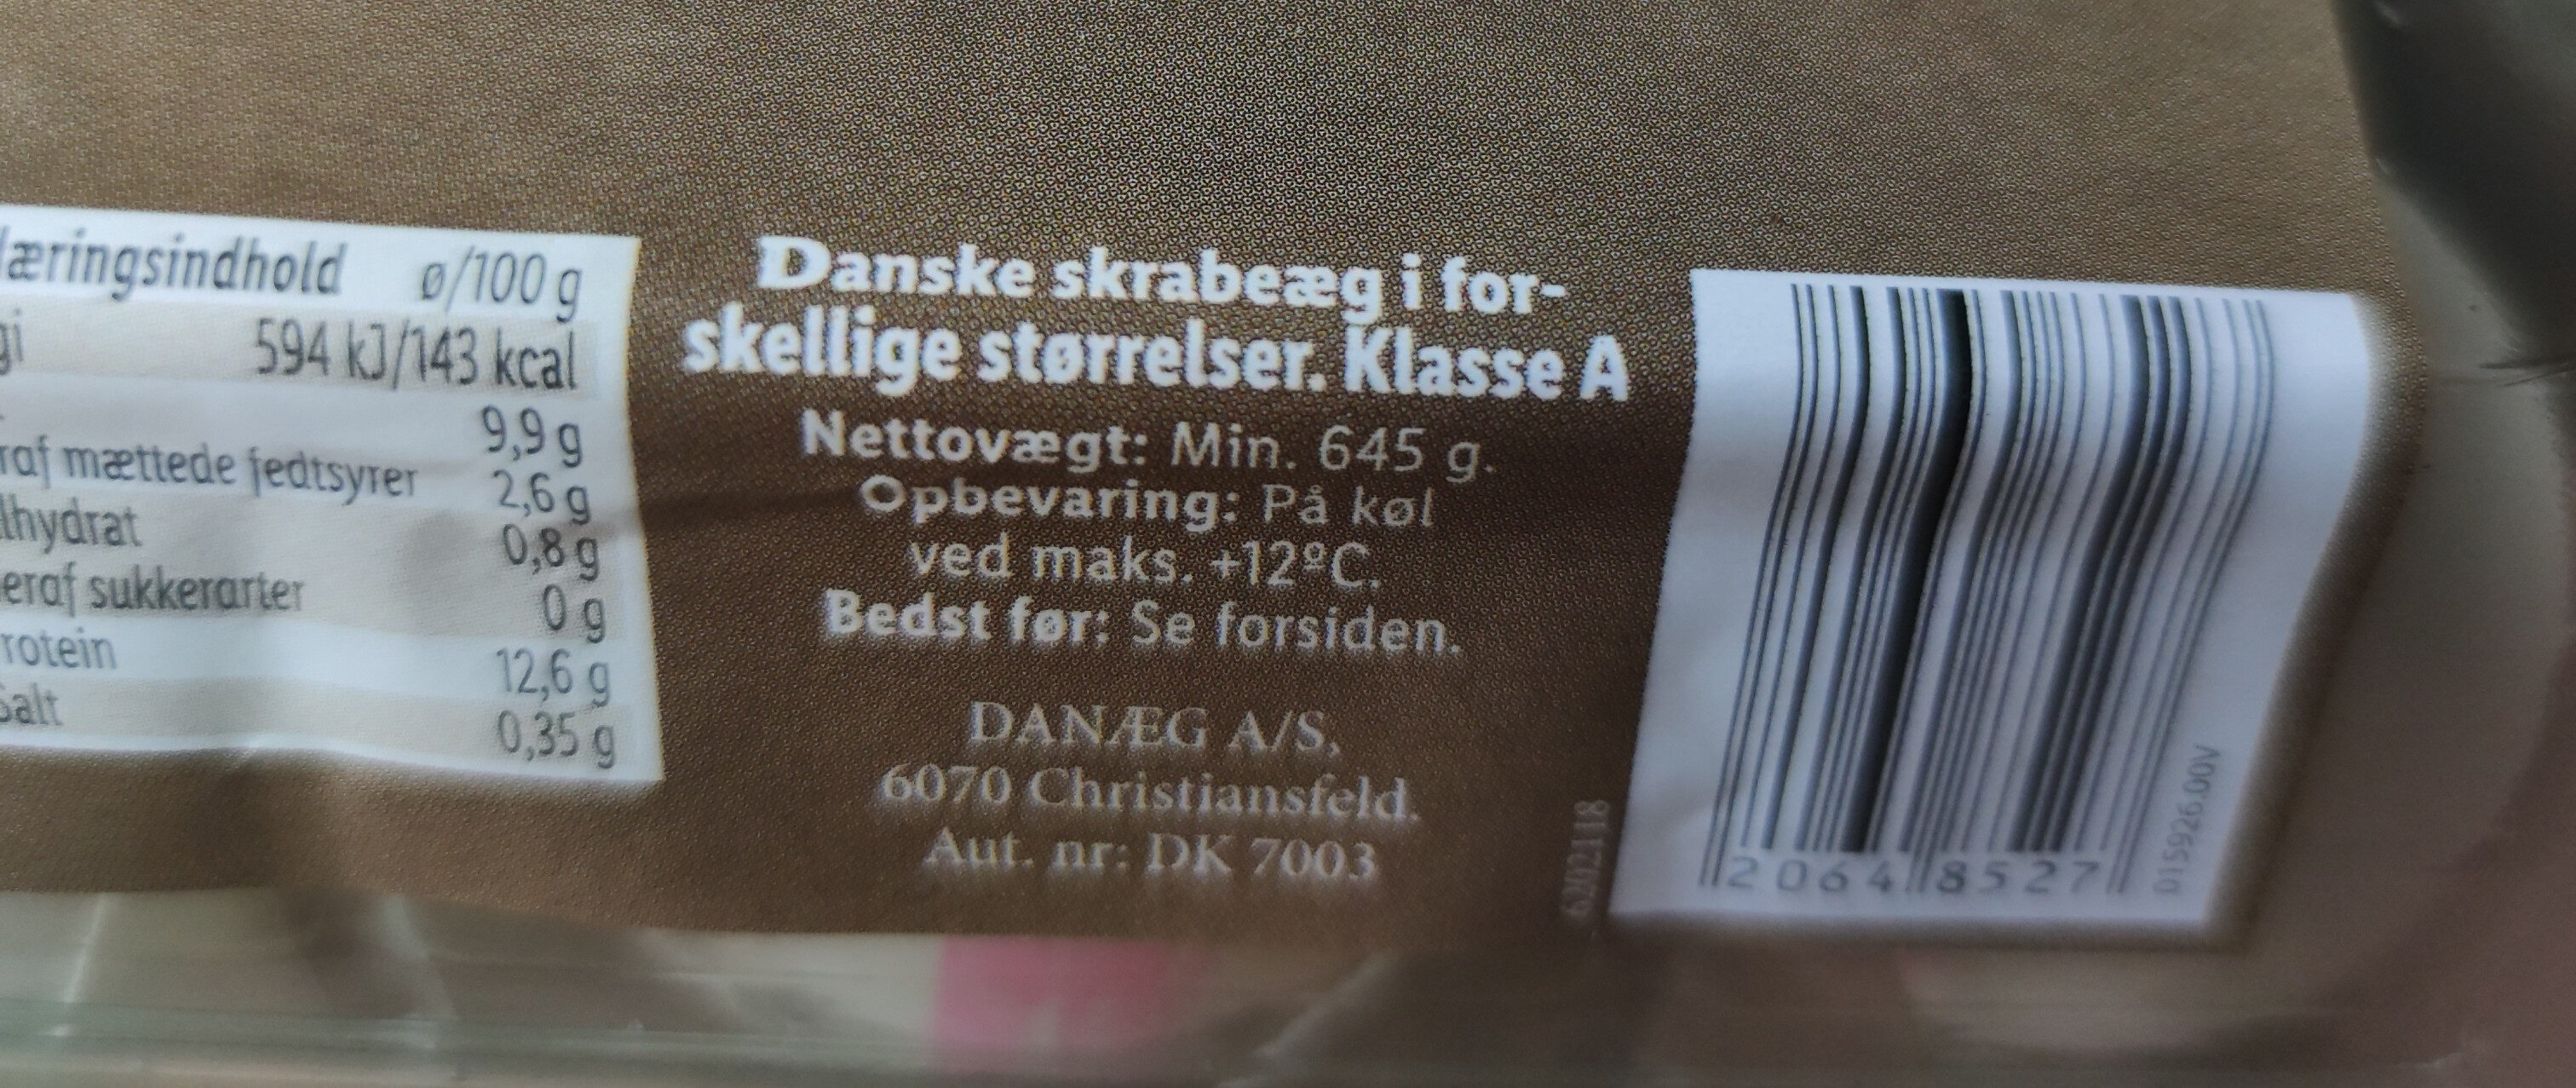 15 danske skrabeæg - Ingredienser